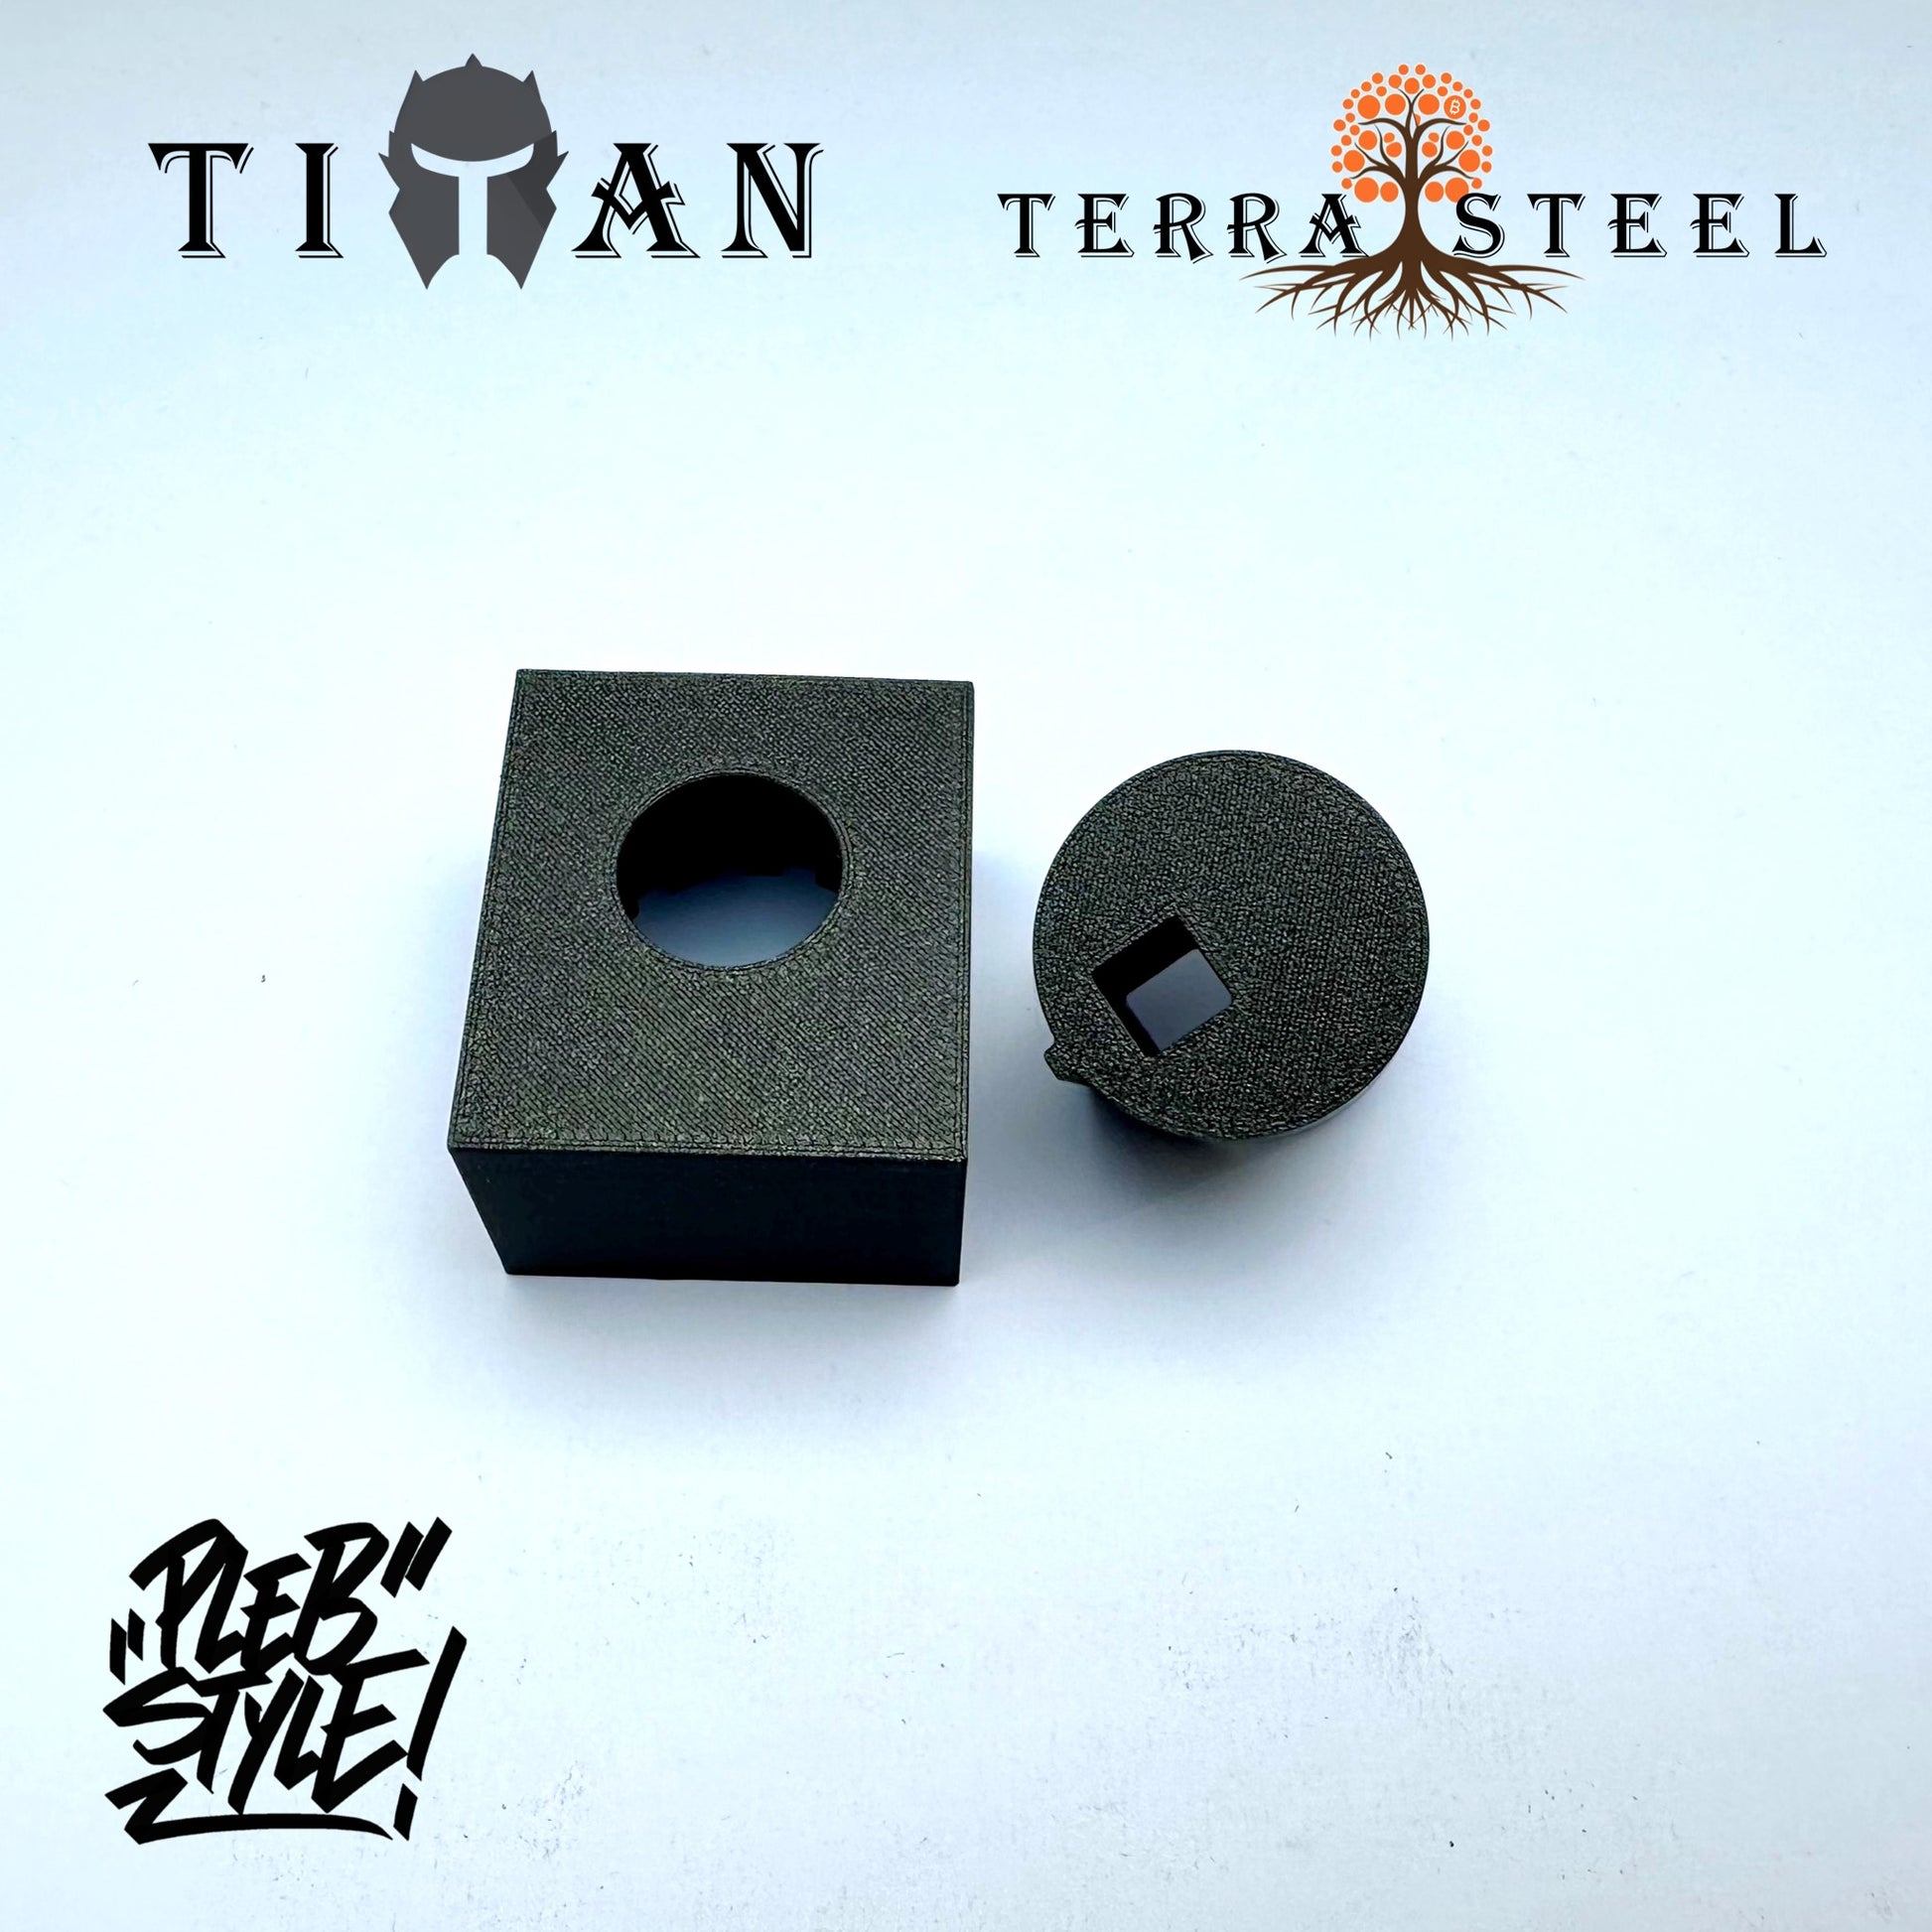 Striking Aid/Jig for Titan Wallet TerraSteel Steel Wallet by Plebstyle - backside